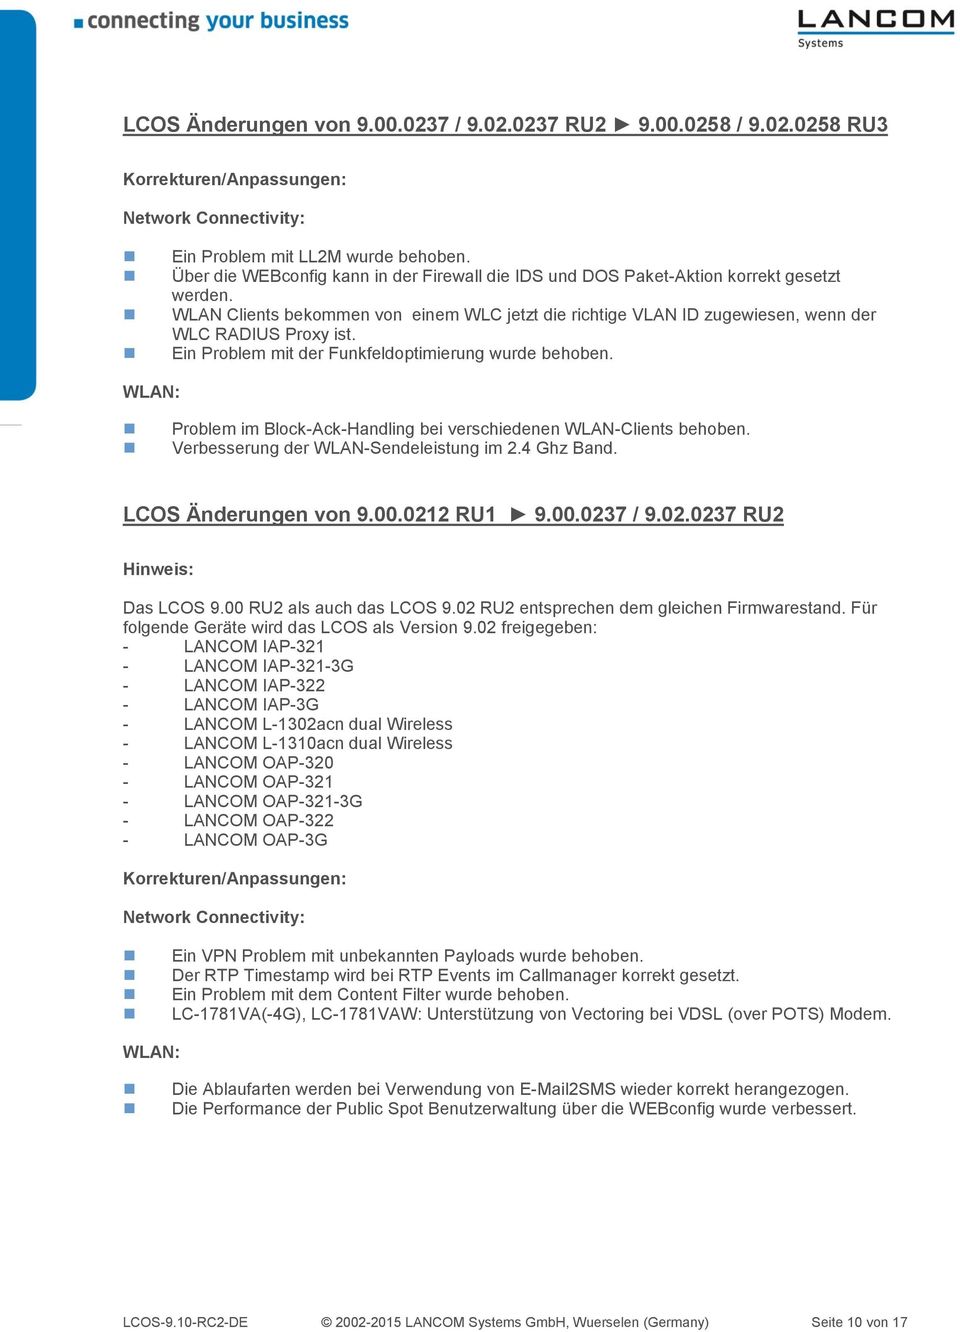 Problem im Block-Ack-Handling bei verschiedenen WLAN-Clients behoben. Verbesserung der WLAN-Sendeleistung im 2.4 Ghz Band. LCOS Änderungen von 9.00.0212 RU1 9.00.0237 / 9.02.0237 RU2 Hinweis: Das LCOS 9.